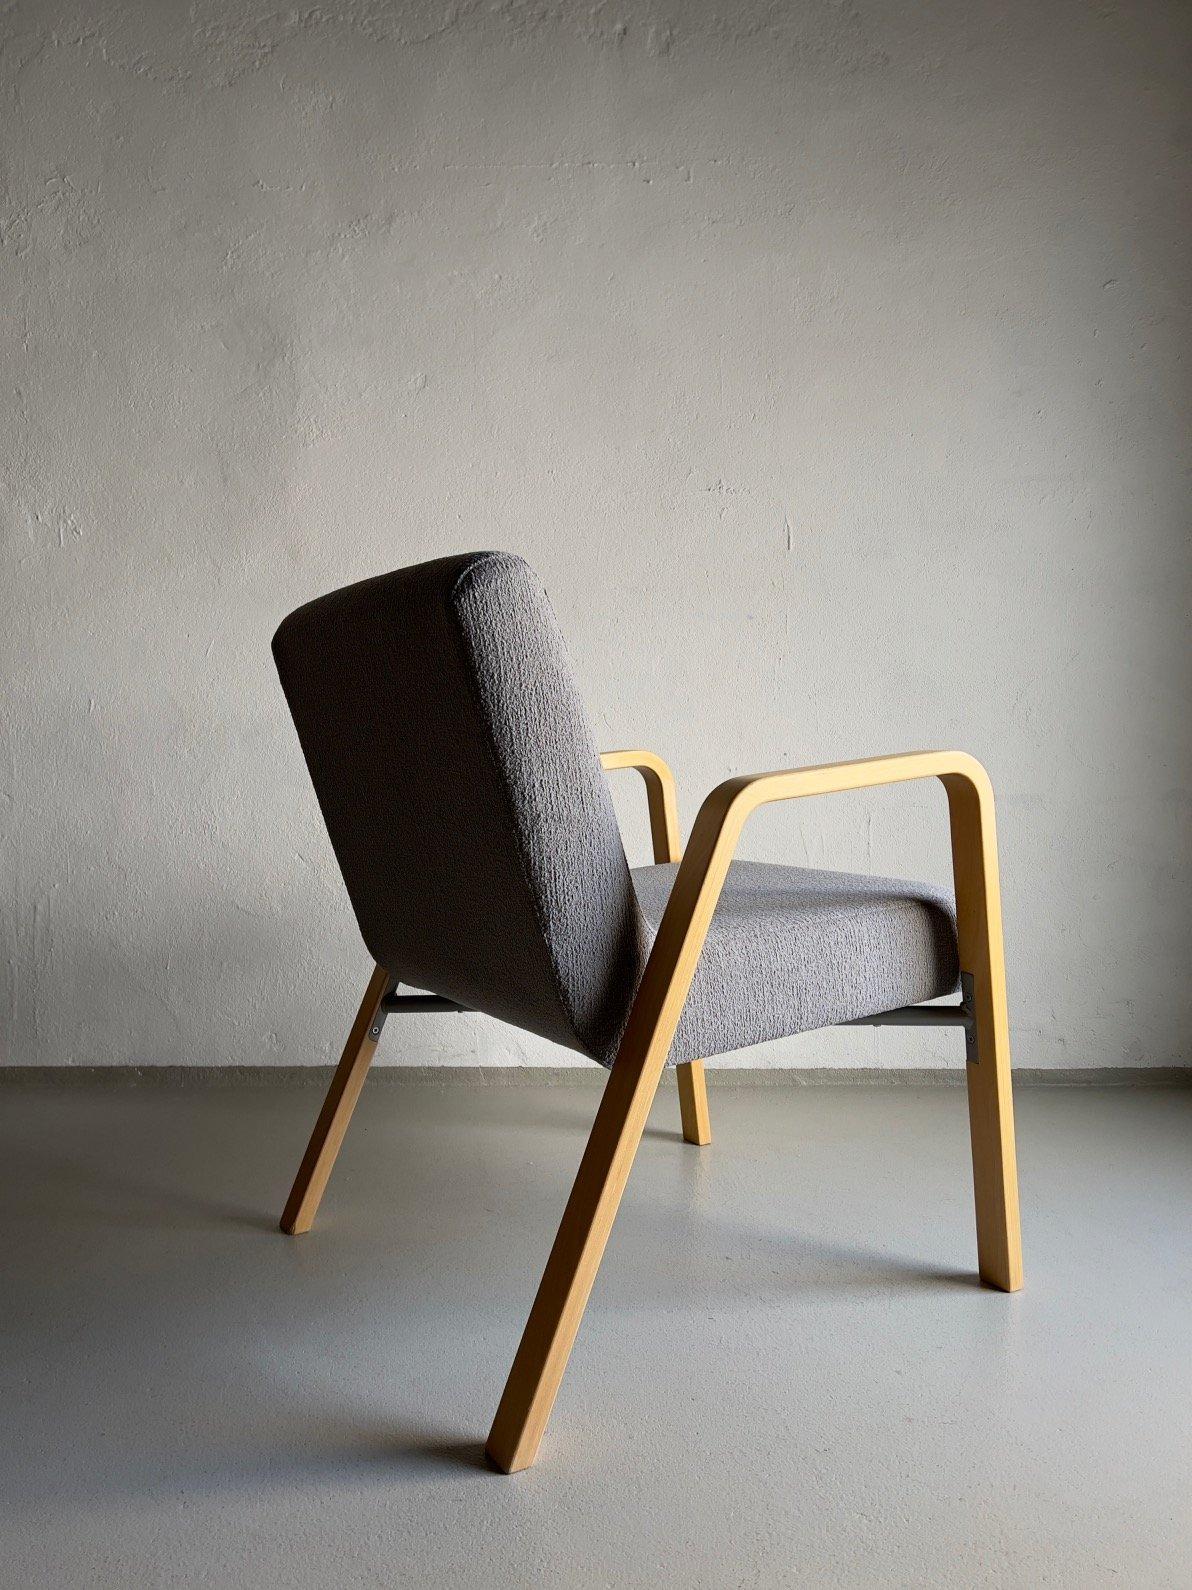 Sessel aus Birke im Vintage-Stil mit neuer grauer Polsterung.

Zusätzliche Informationen:
Abmessungen: 63 B x 65 T x 76 H cm
Sitz: 43 H cm
Zustand: Guter Vintage-Zustand